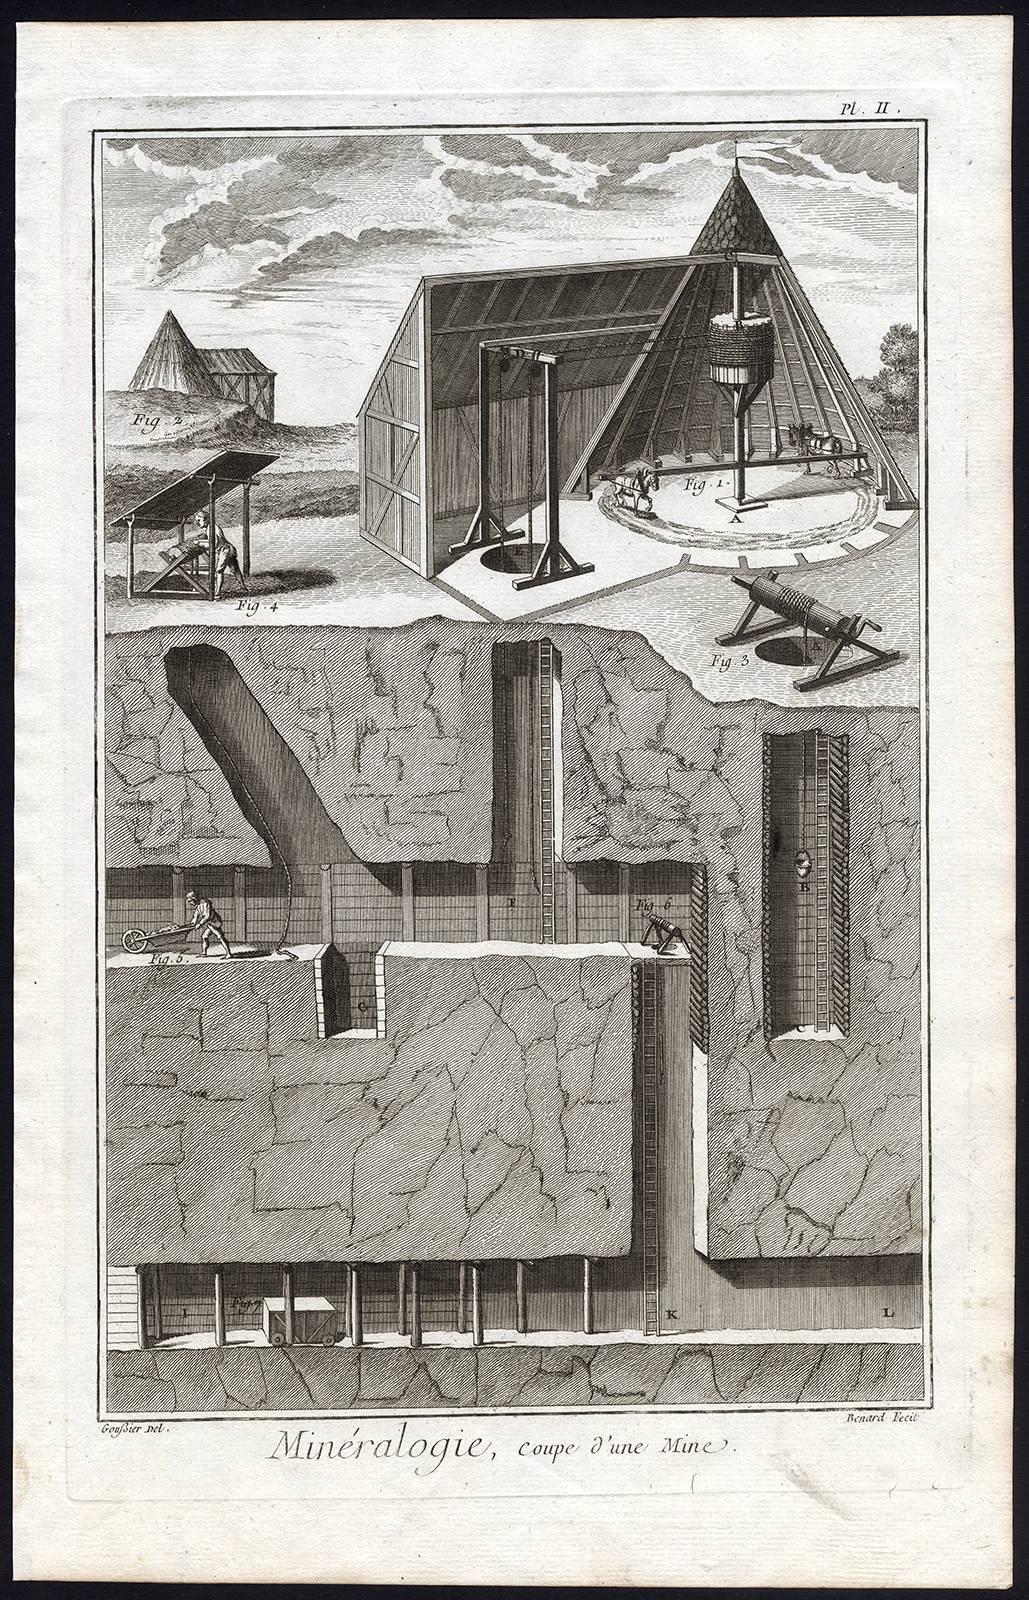 Mineralogie, coupe d'une mine. - Print by J.A. Defehrt and Bonaventure Benoit-Louis Prevost 